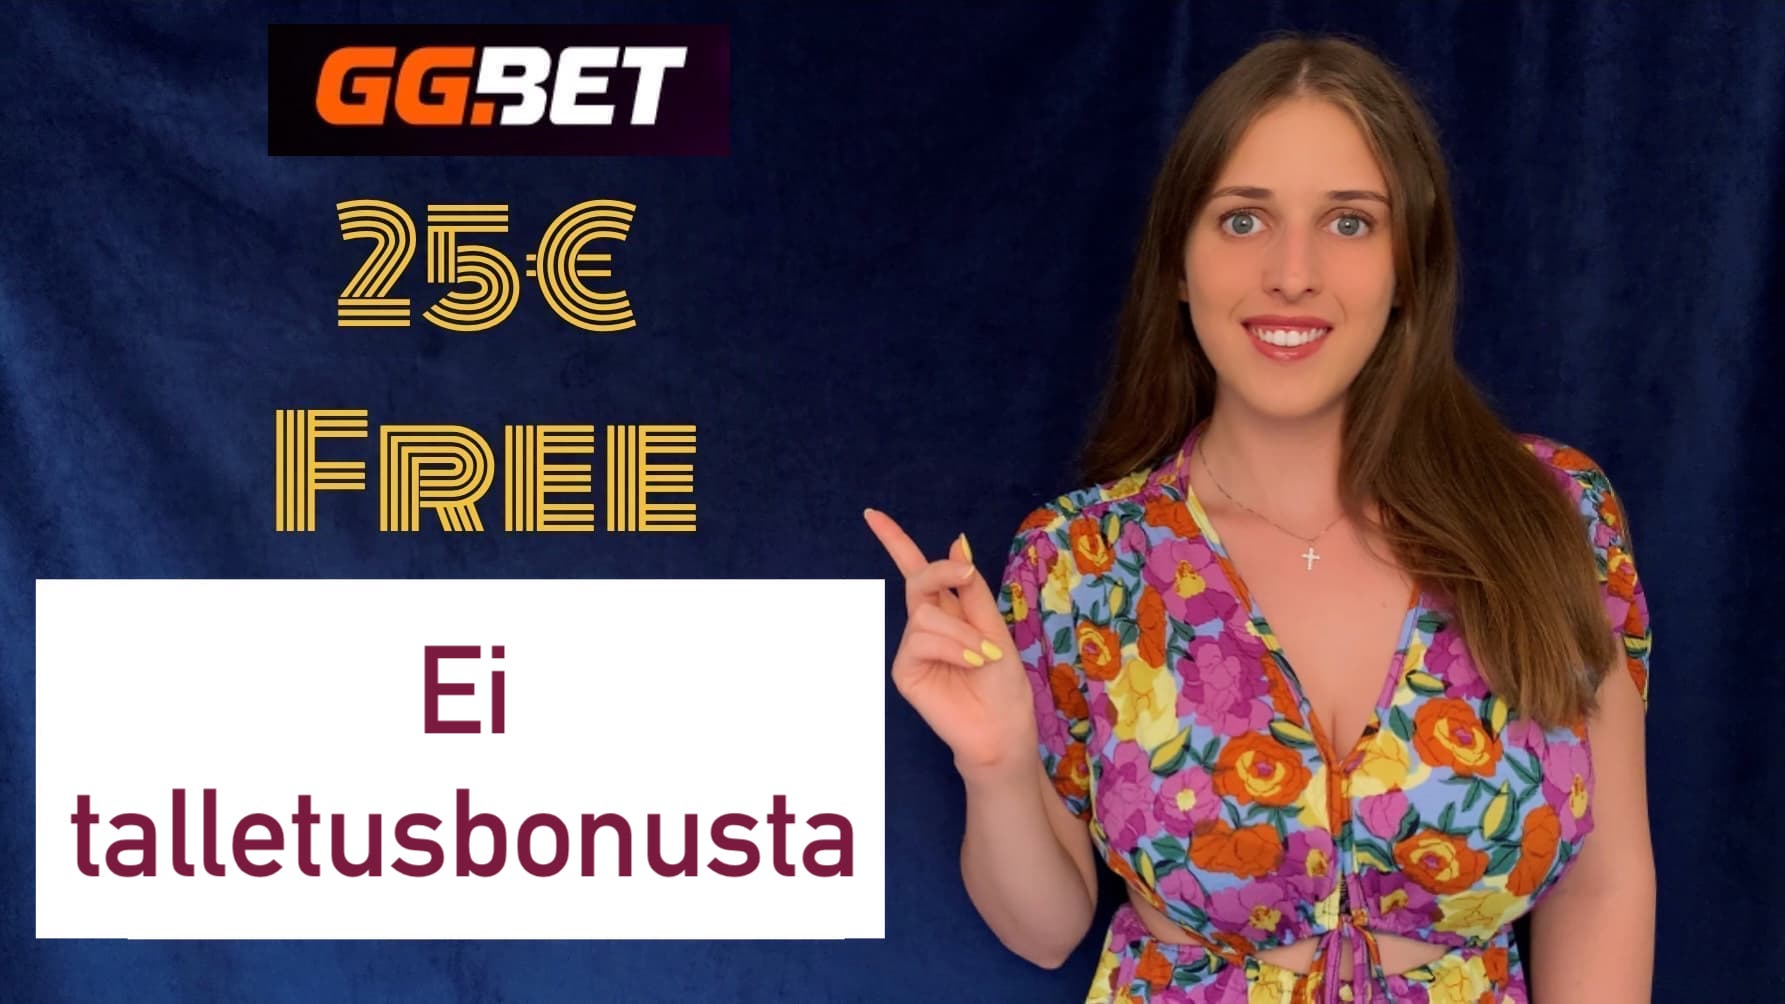 GGBet Casino €25 ei talletus bonus